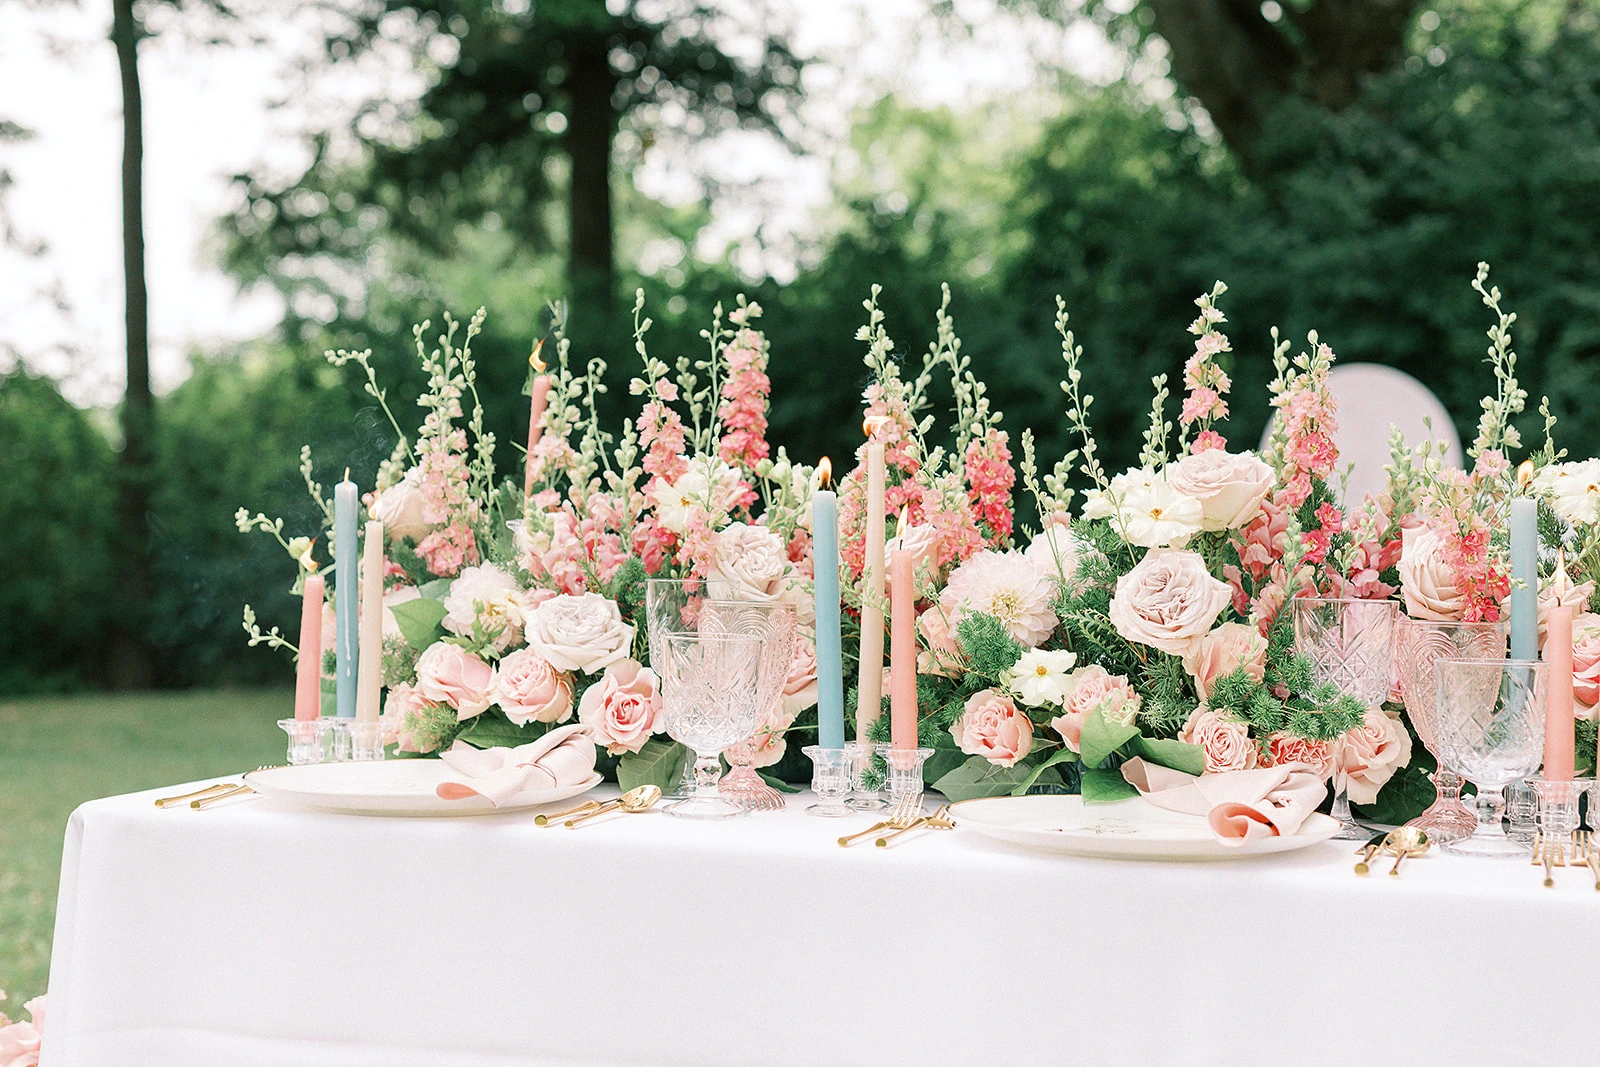 Beautiful summer wedding table